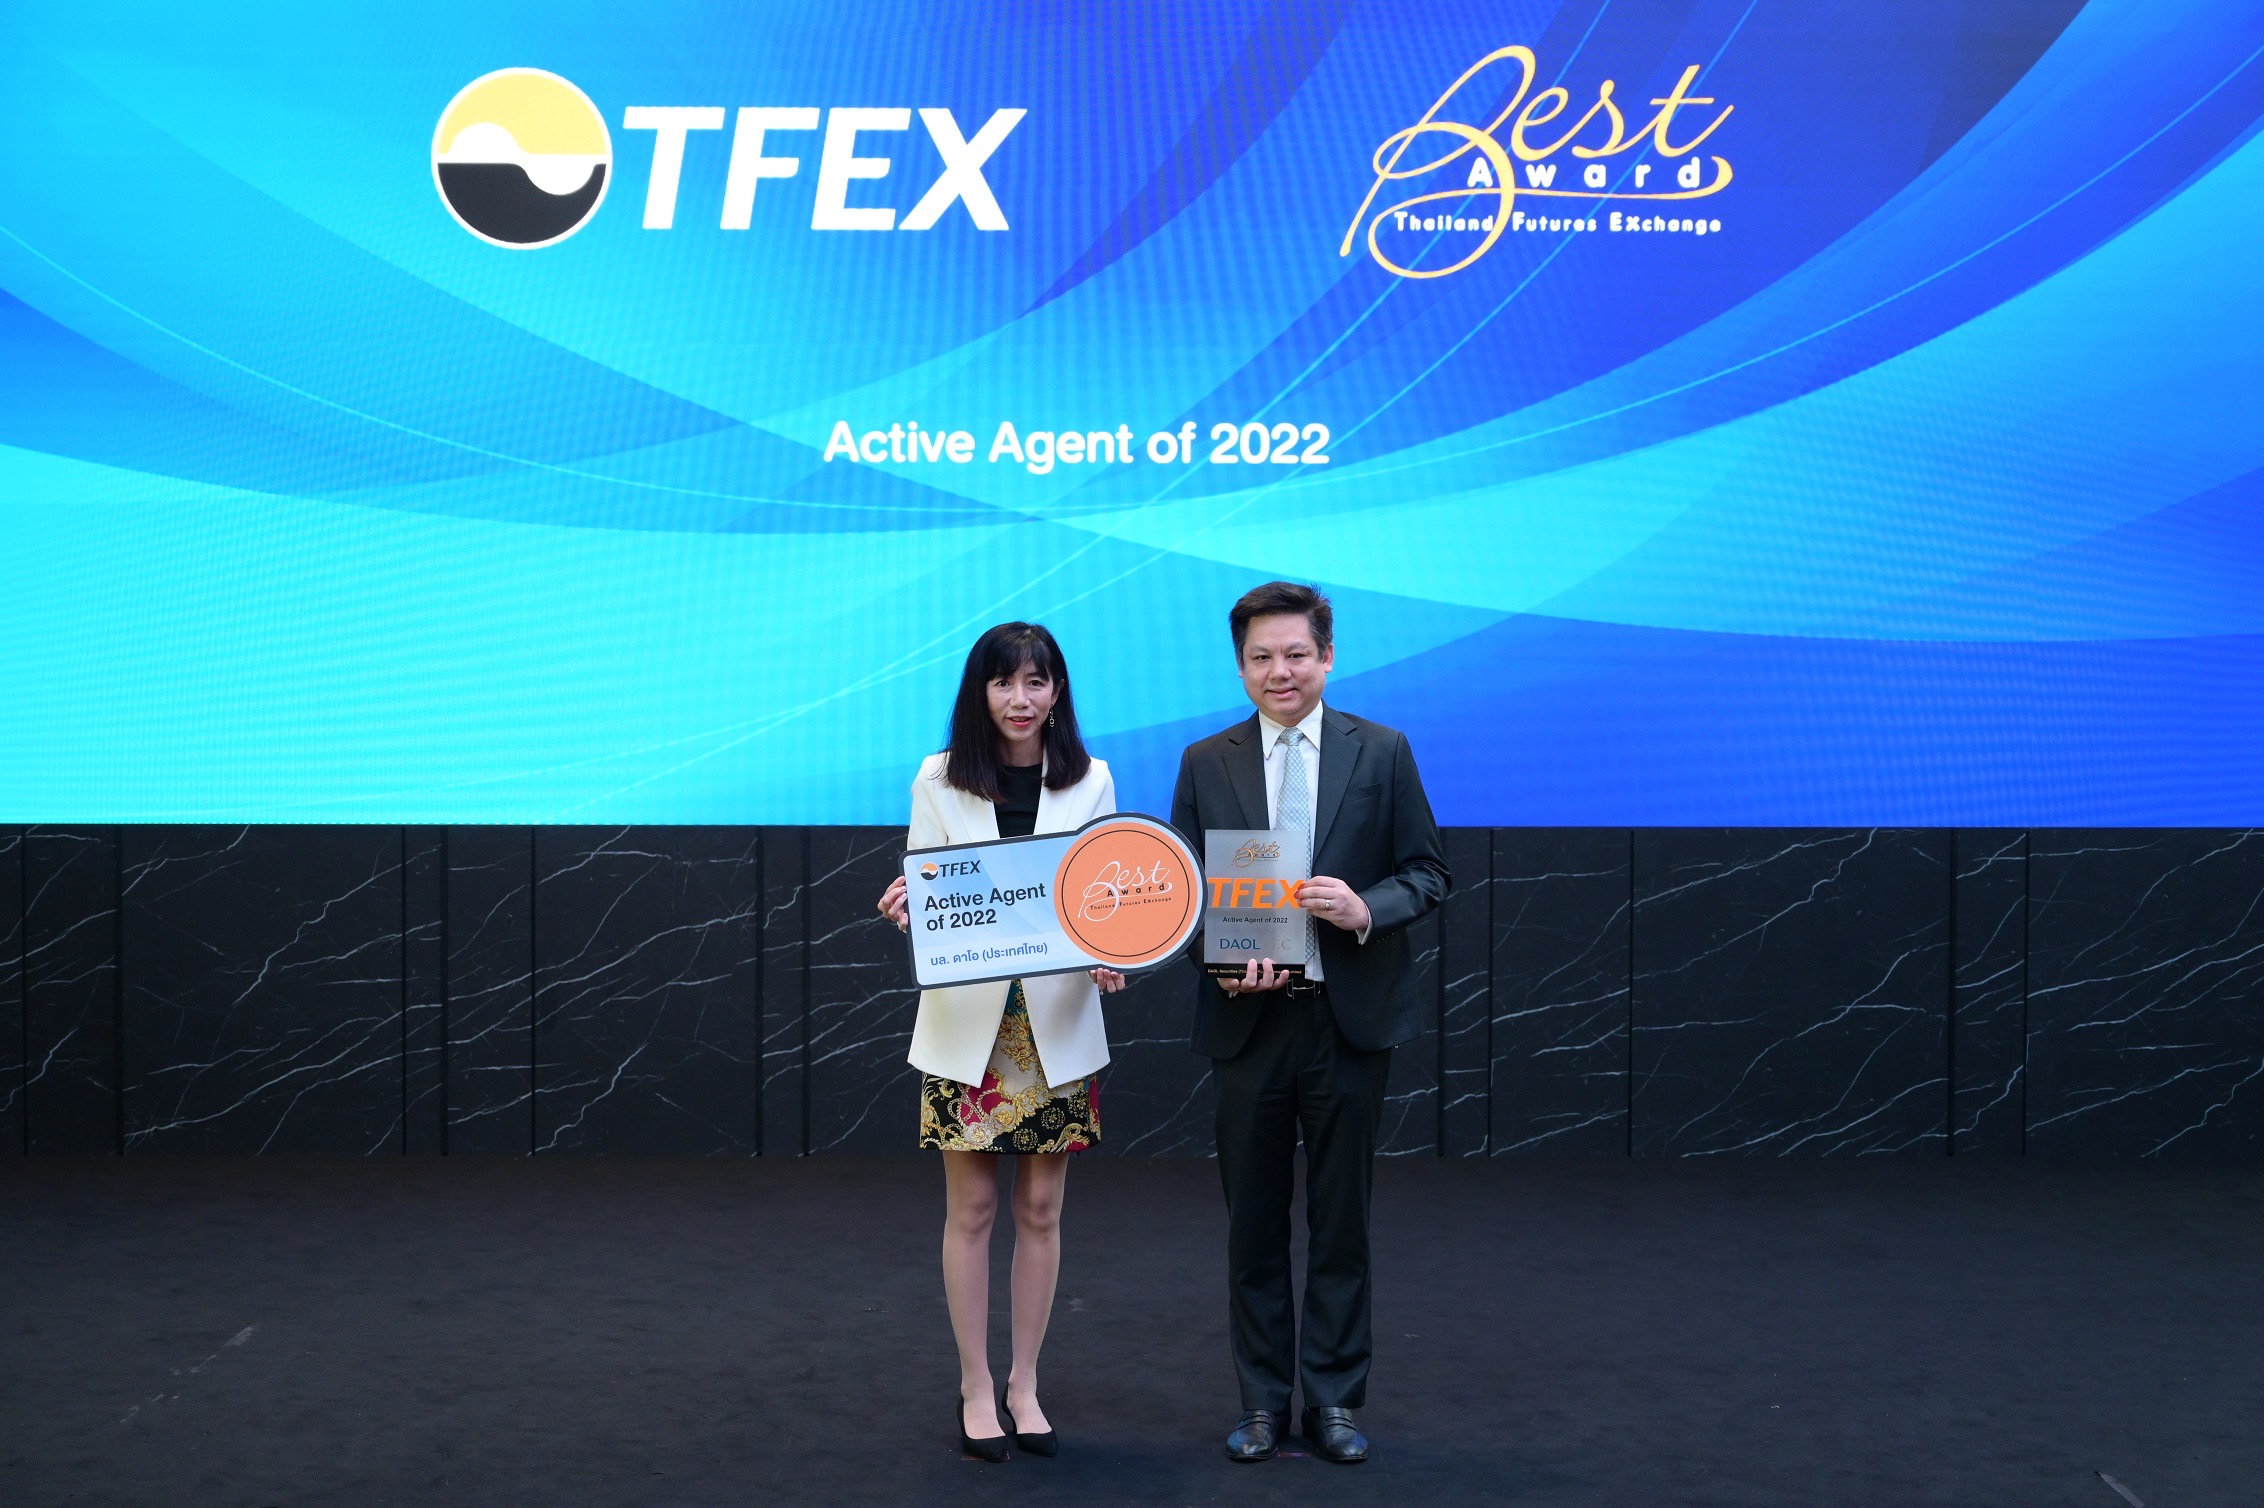 บล.ดาโอ คว้ารางวัล Active Agent of 2022 จากงาน TFEX Best Award